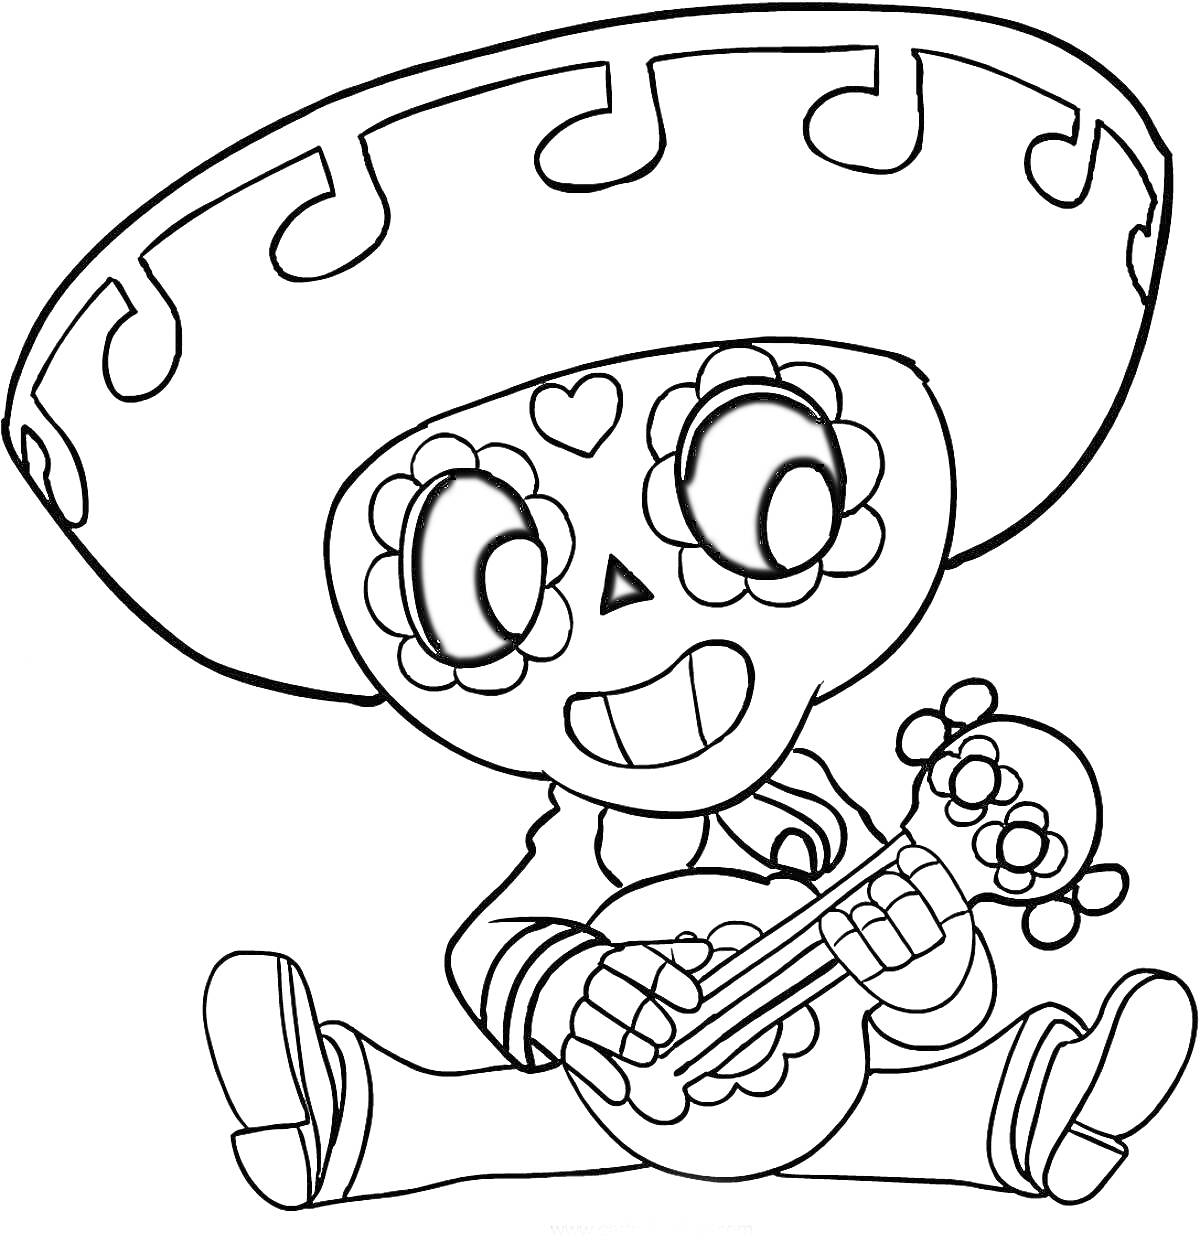 Персонаж с сомбреро и гитарой из Браво Старс, сидящий на полу